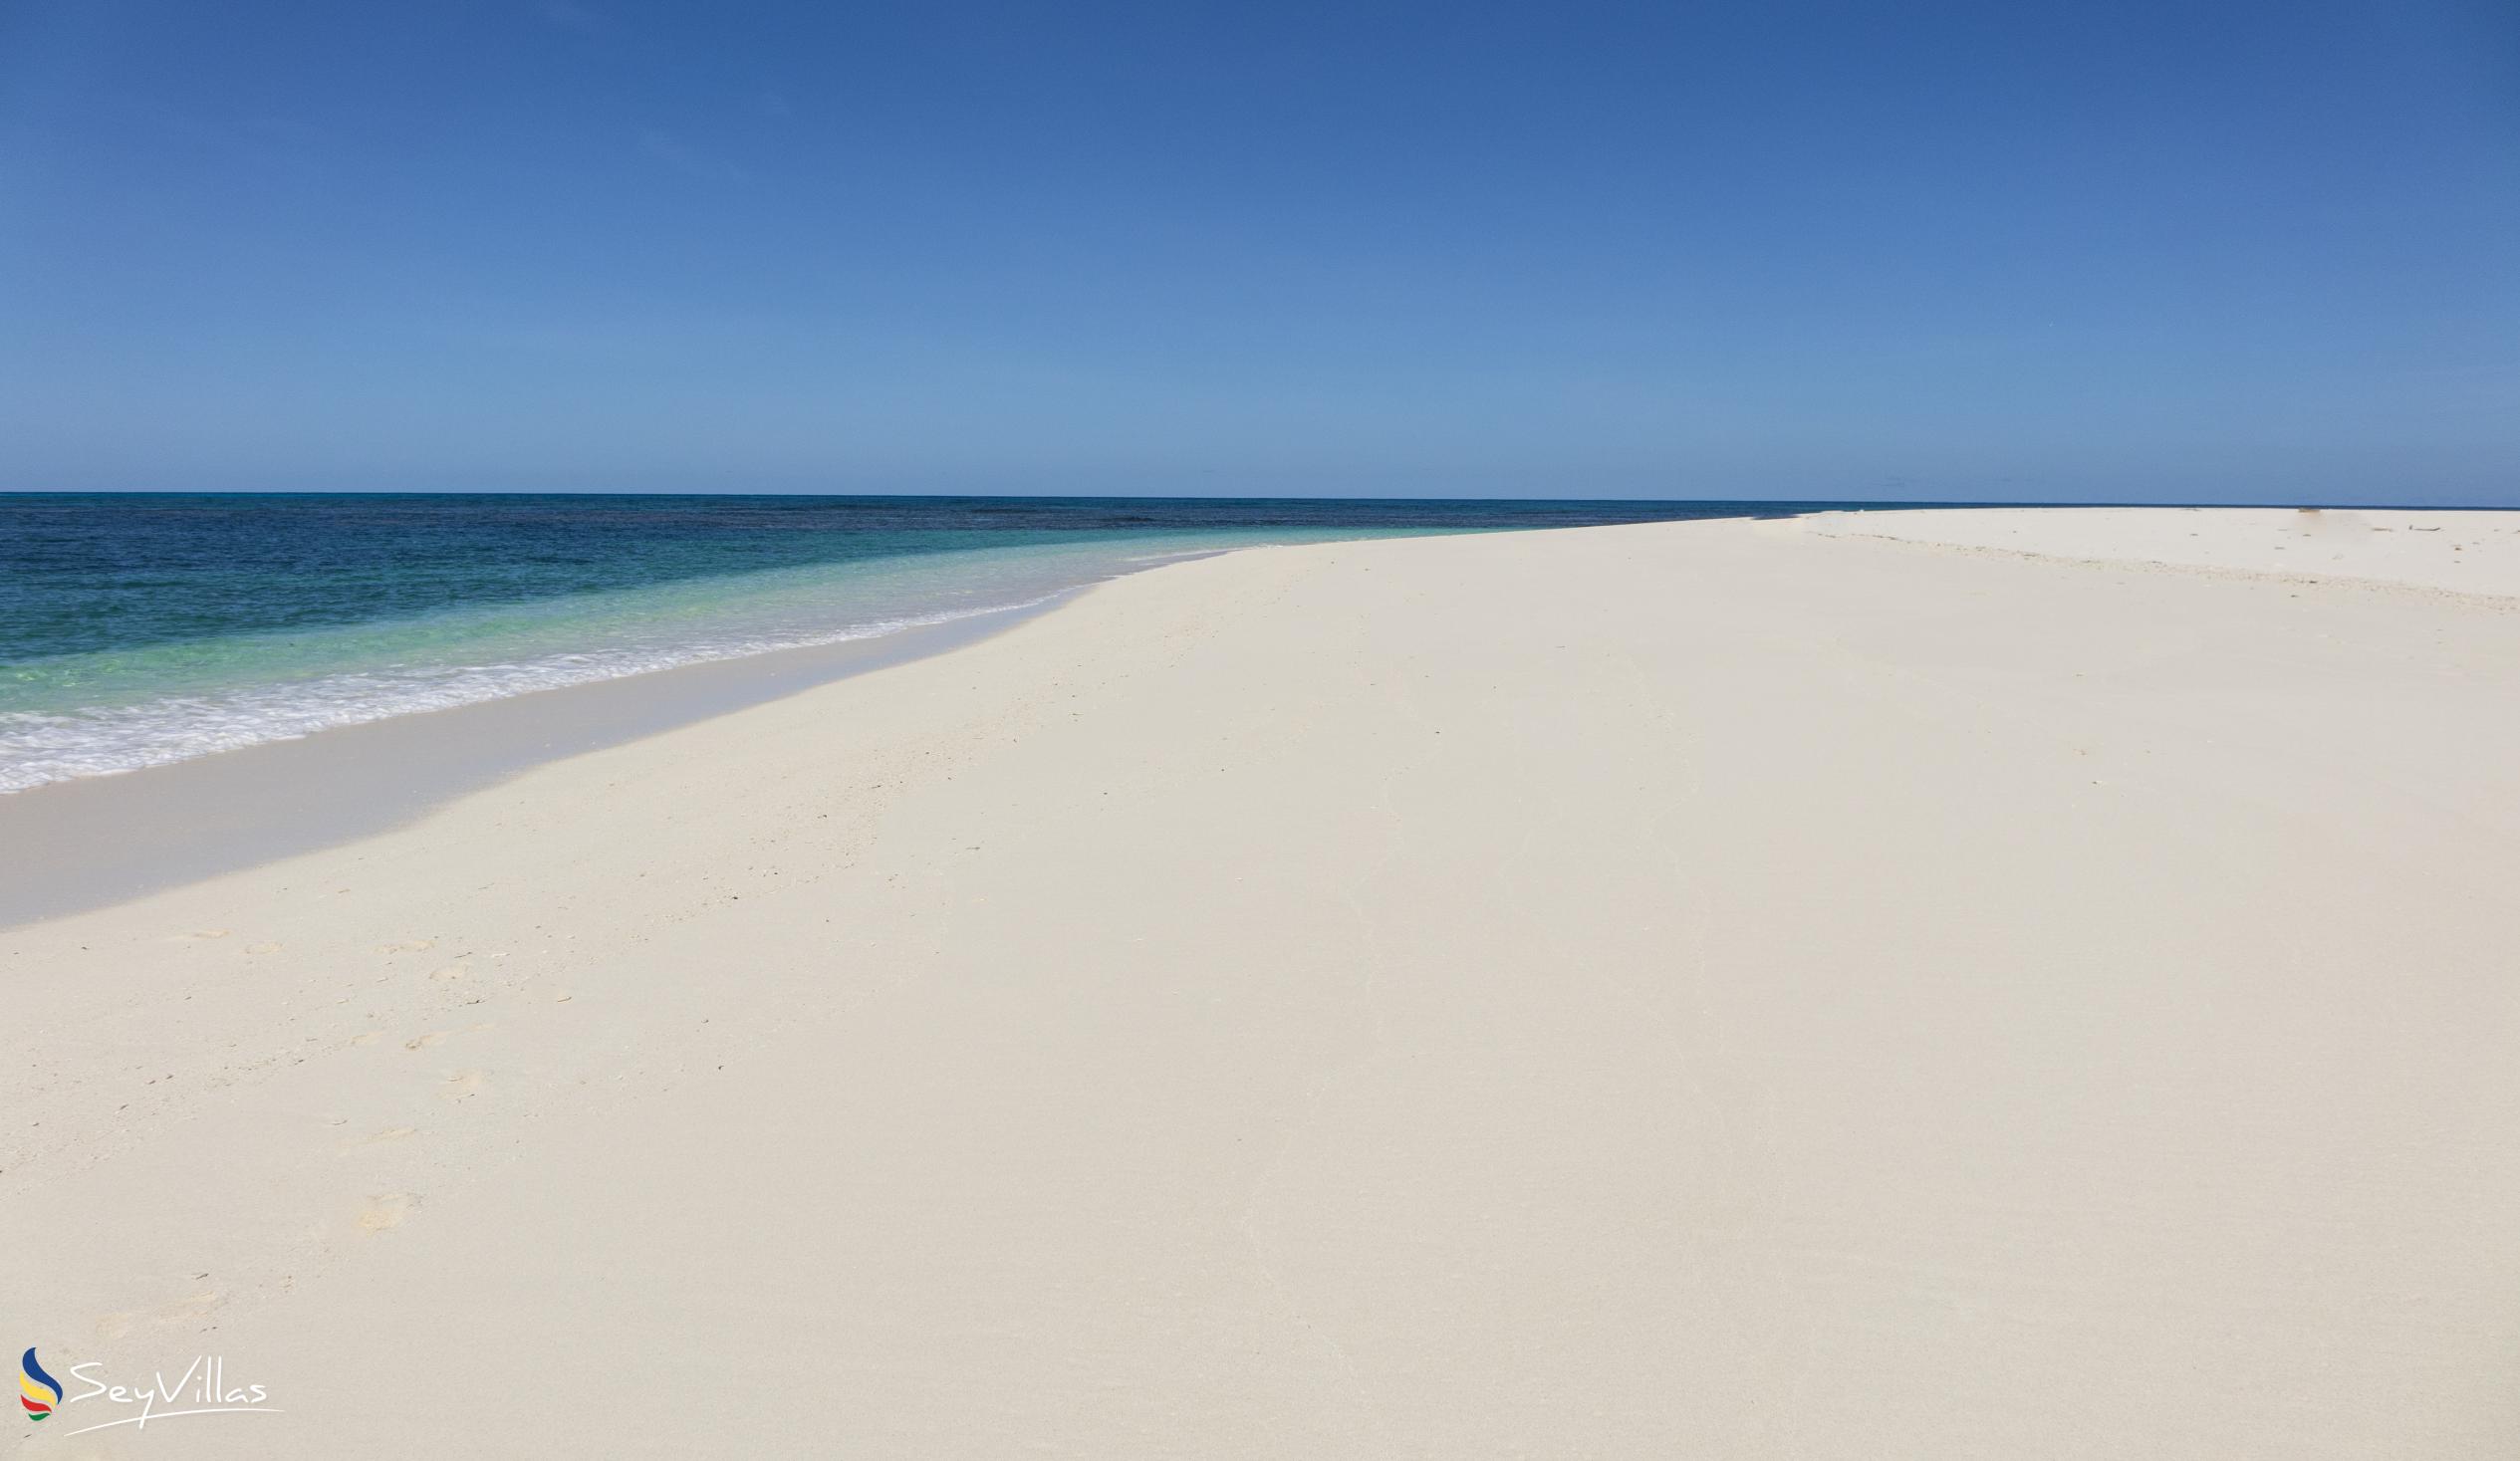 Foto 10: Denis Island Beaches - Weitere Inseln (Seychellen)